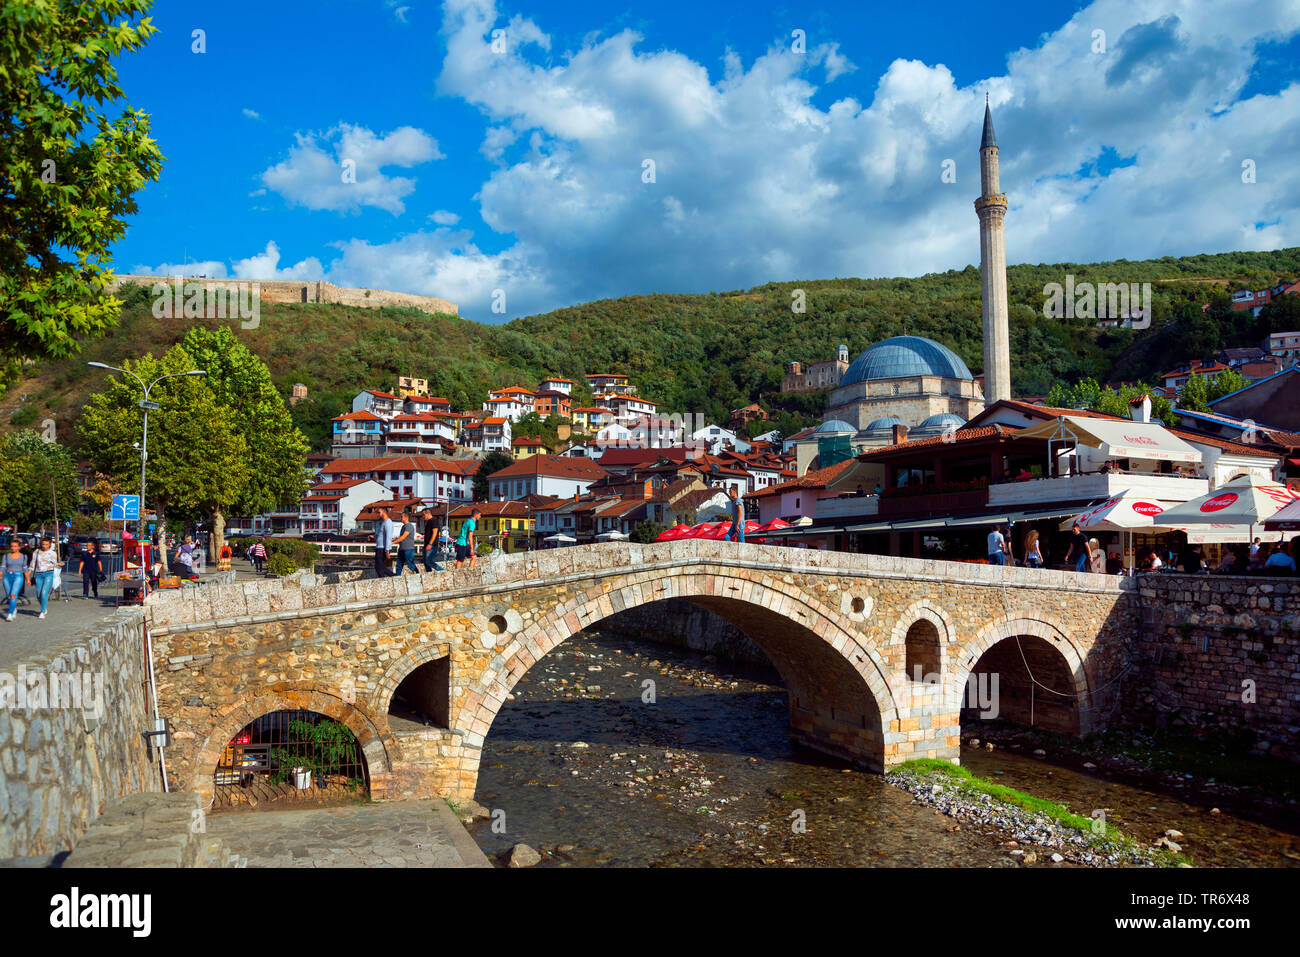 Vieille Ville avec brdge de pierre sur la rivière Bistrica, Sinan Pasha Mosque et la forteresse en arrière-plan, au Kosovo, Prizren Banque D'Images